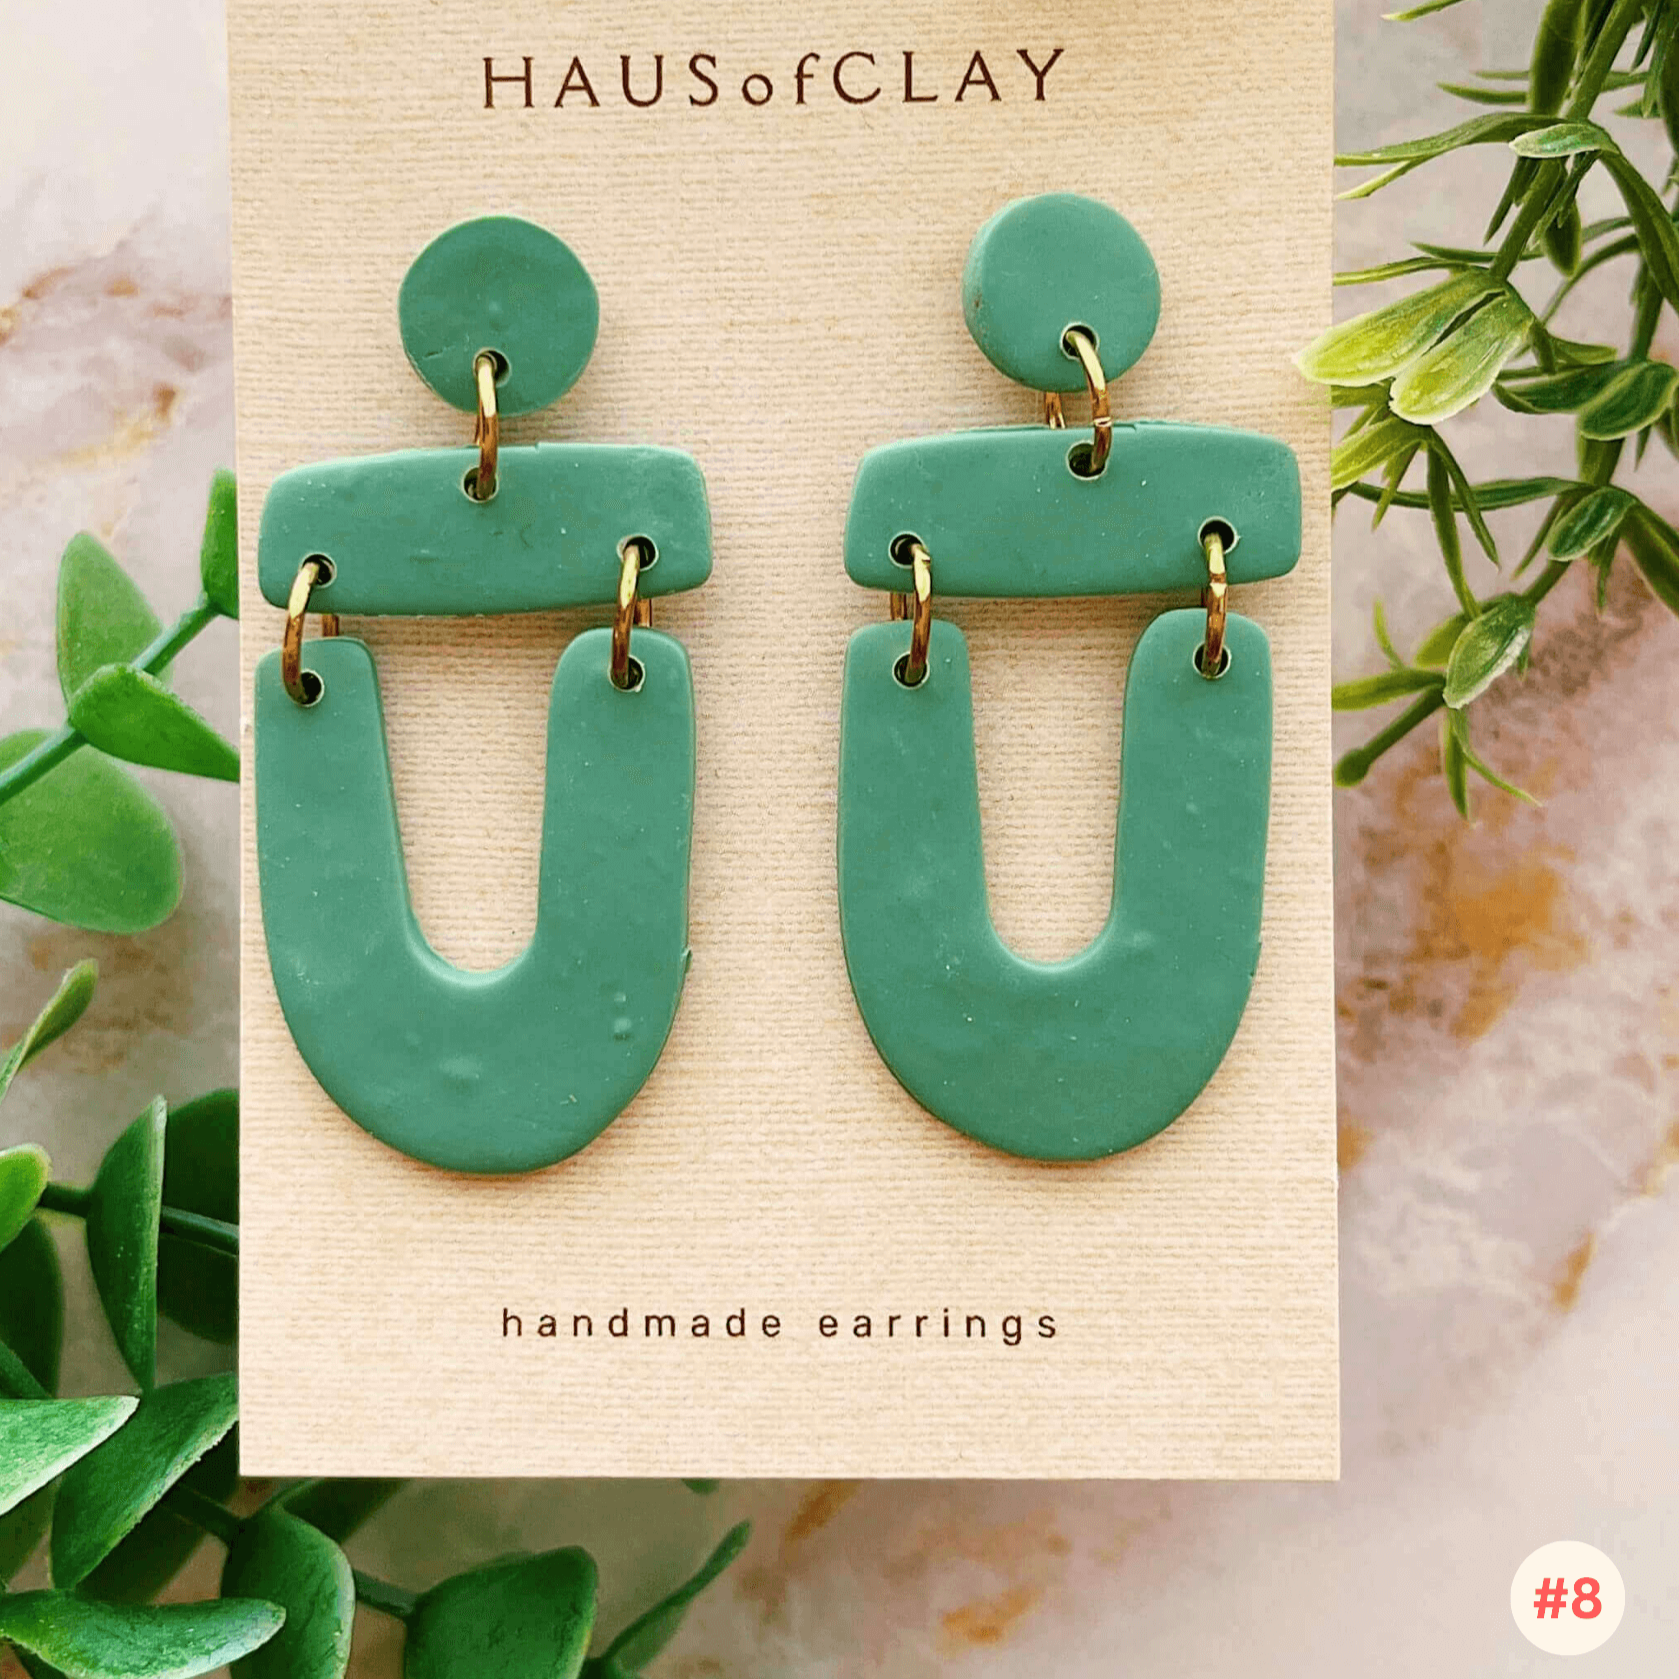 Haus of Clay Earrings - $34